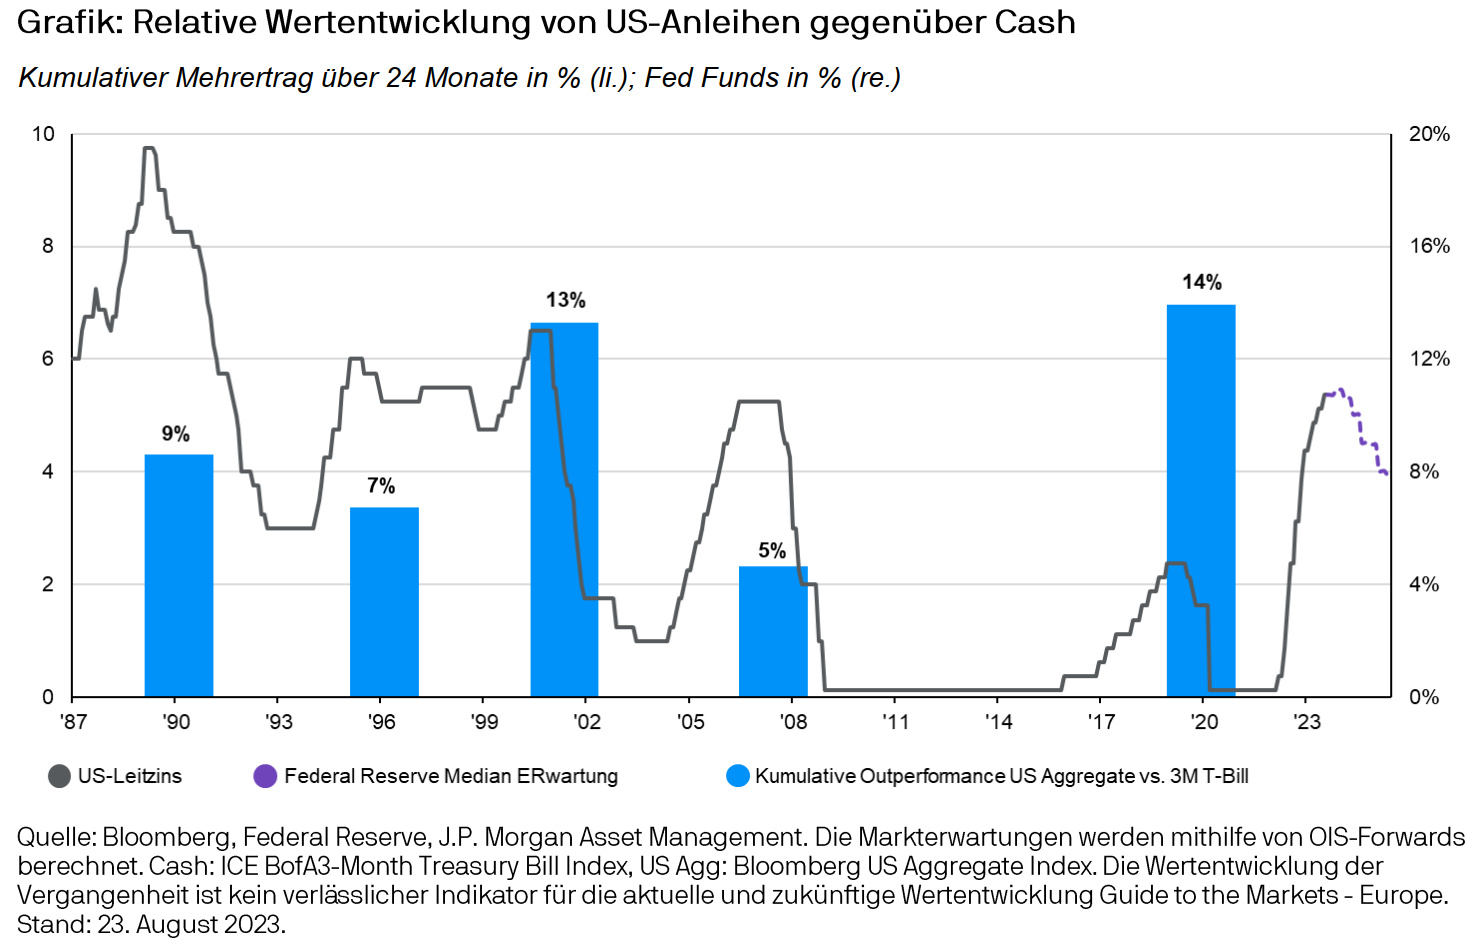 Relative Wertentwicklung US-Anleihen vs cash